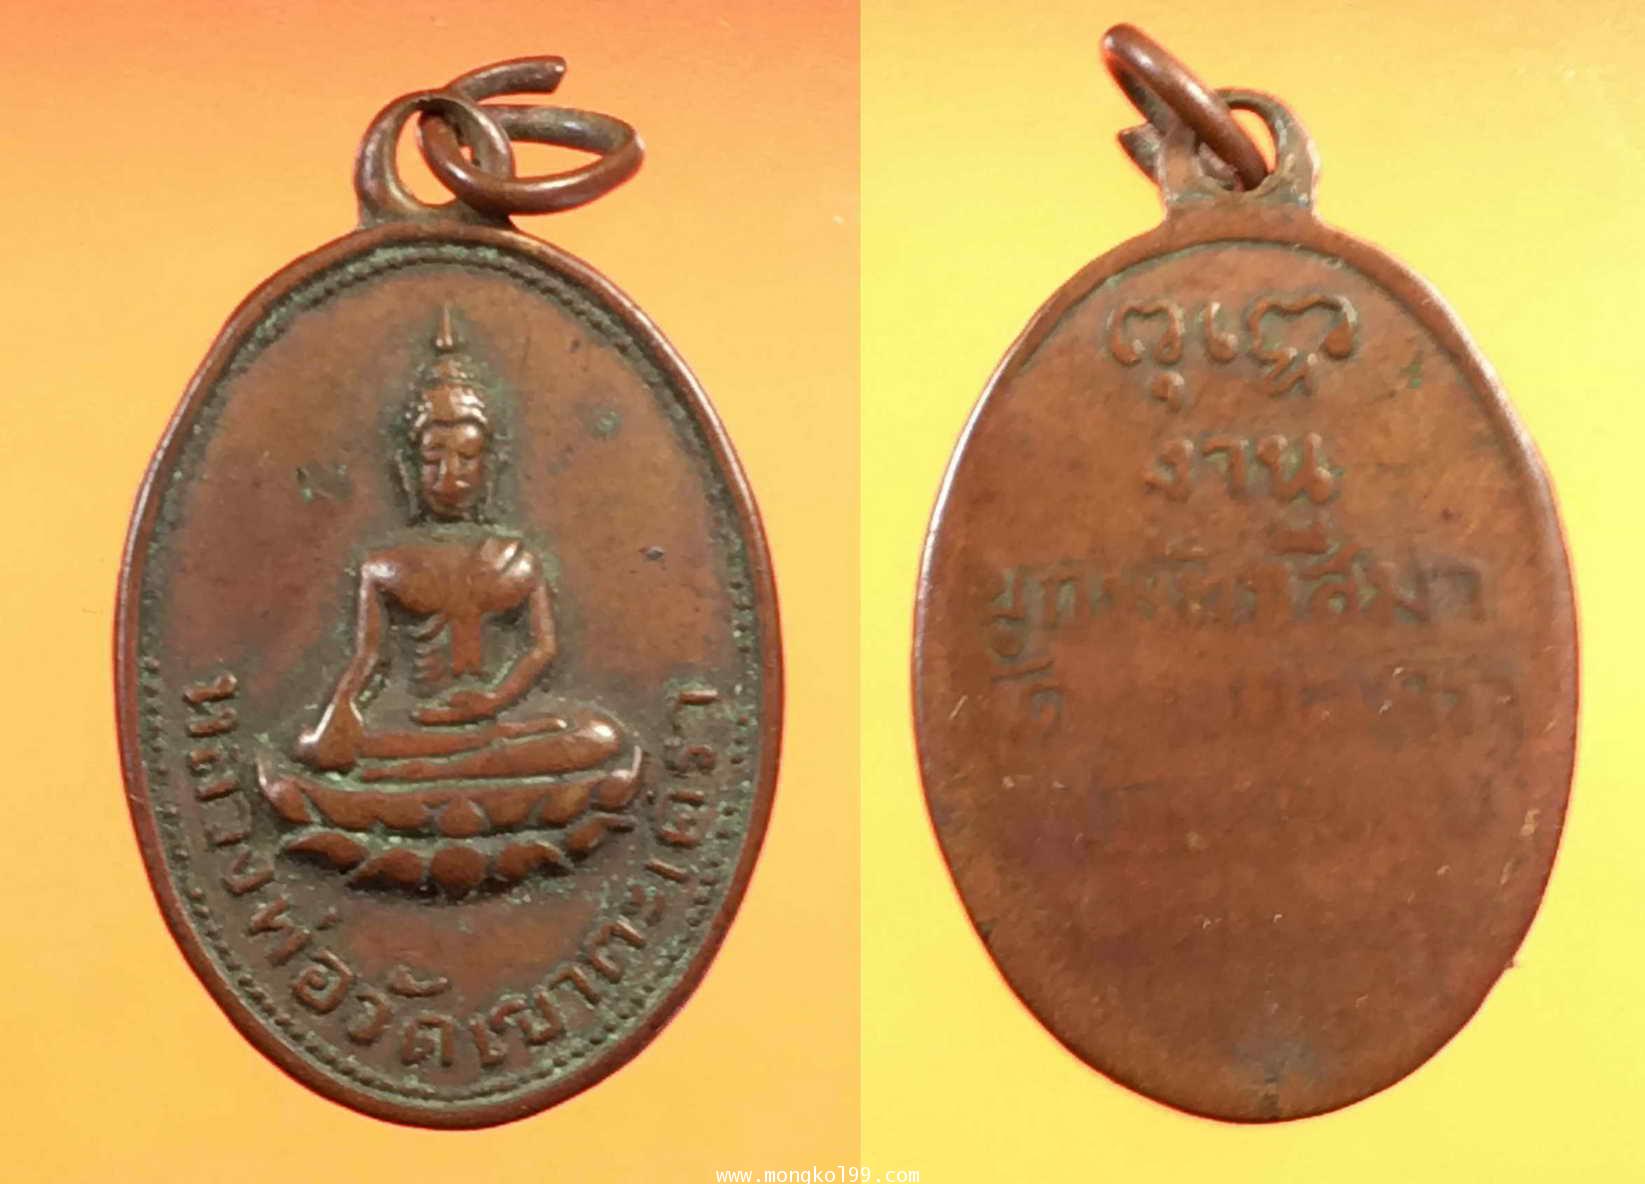 พระเครื่อง เหรียญหลวงพ่อวัดเขาตะเครา จ.เพชรบุรี ปี 2501 เนื้อทองแดง พิมพ์รูปไข่